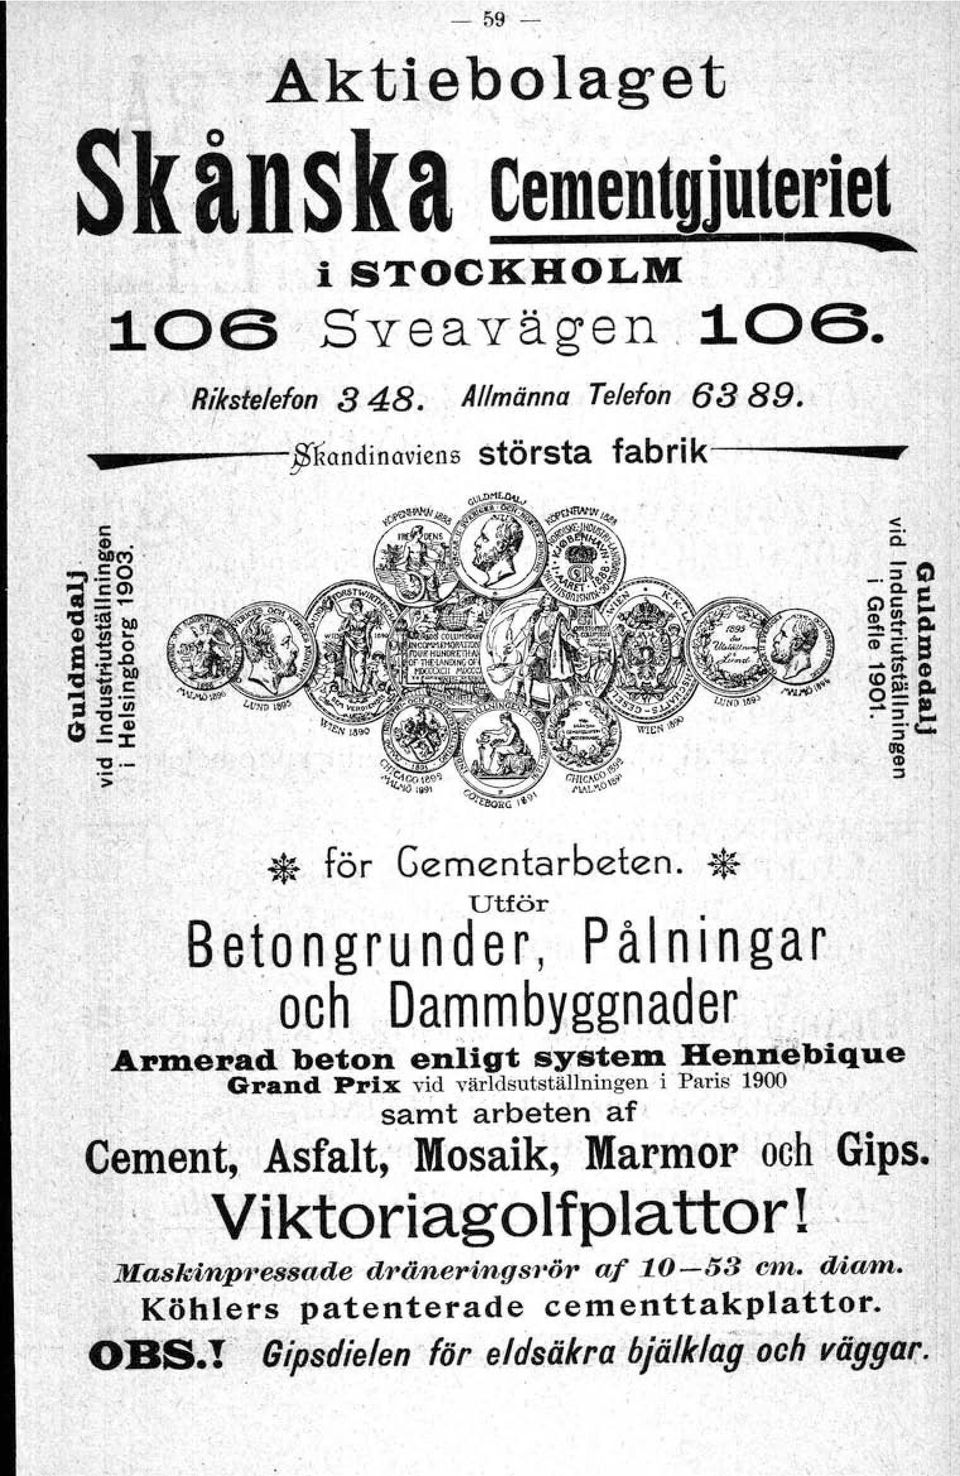 Hendö;blque ",,, Grand Prix vid världsutställningen i Paris 1900,.' samt arbeten af oj', Cement" Asfalt,' Mosaik,Ma~mor och ',Gips.:l ':.